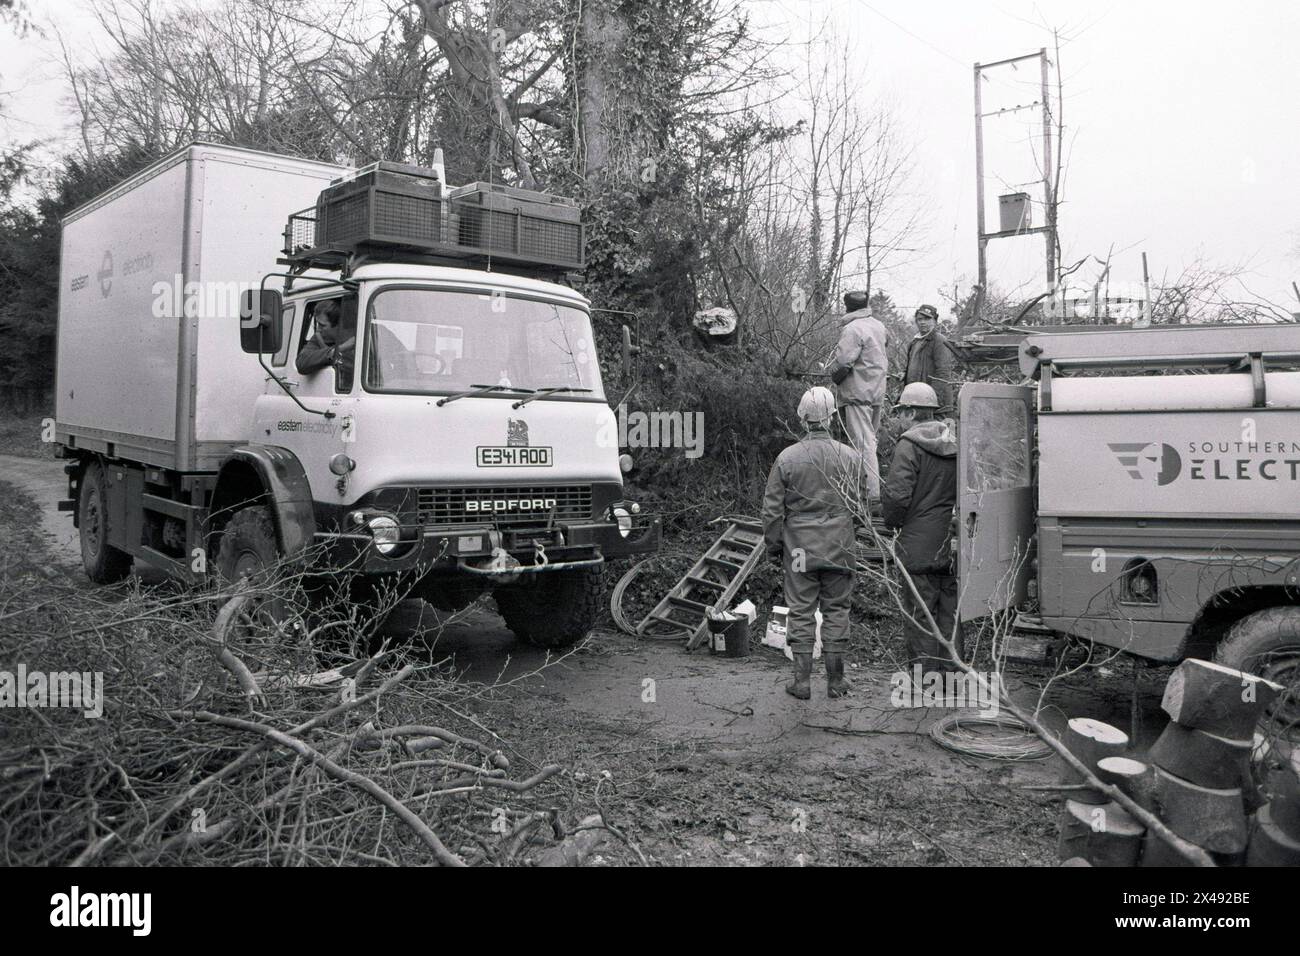 En train de se ranger après la grande tempête qui a frappé le sud de l'Angleterre en janvier 1990. Une équipe de Southern Electric répare les câbles électriques aériens dans la vallée de Woodford près de Salisbury, Wiltshire. Banque D'Images